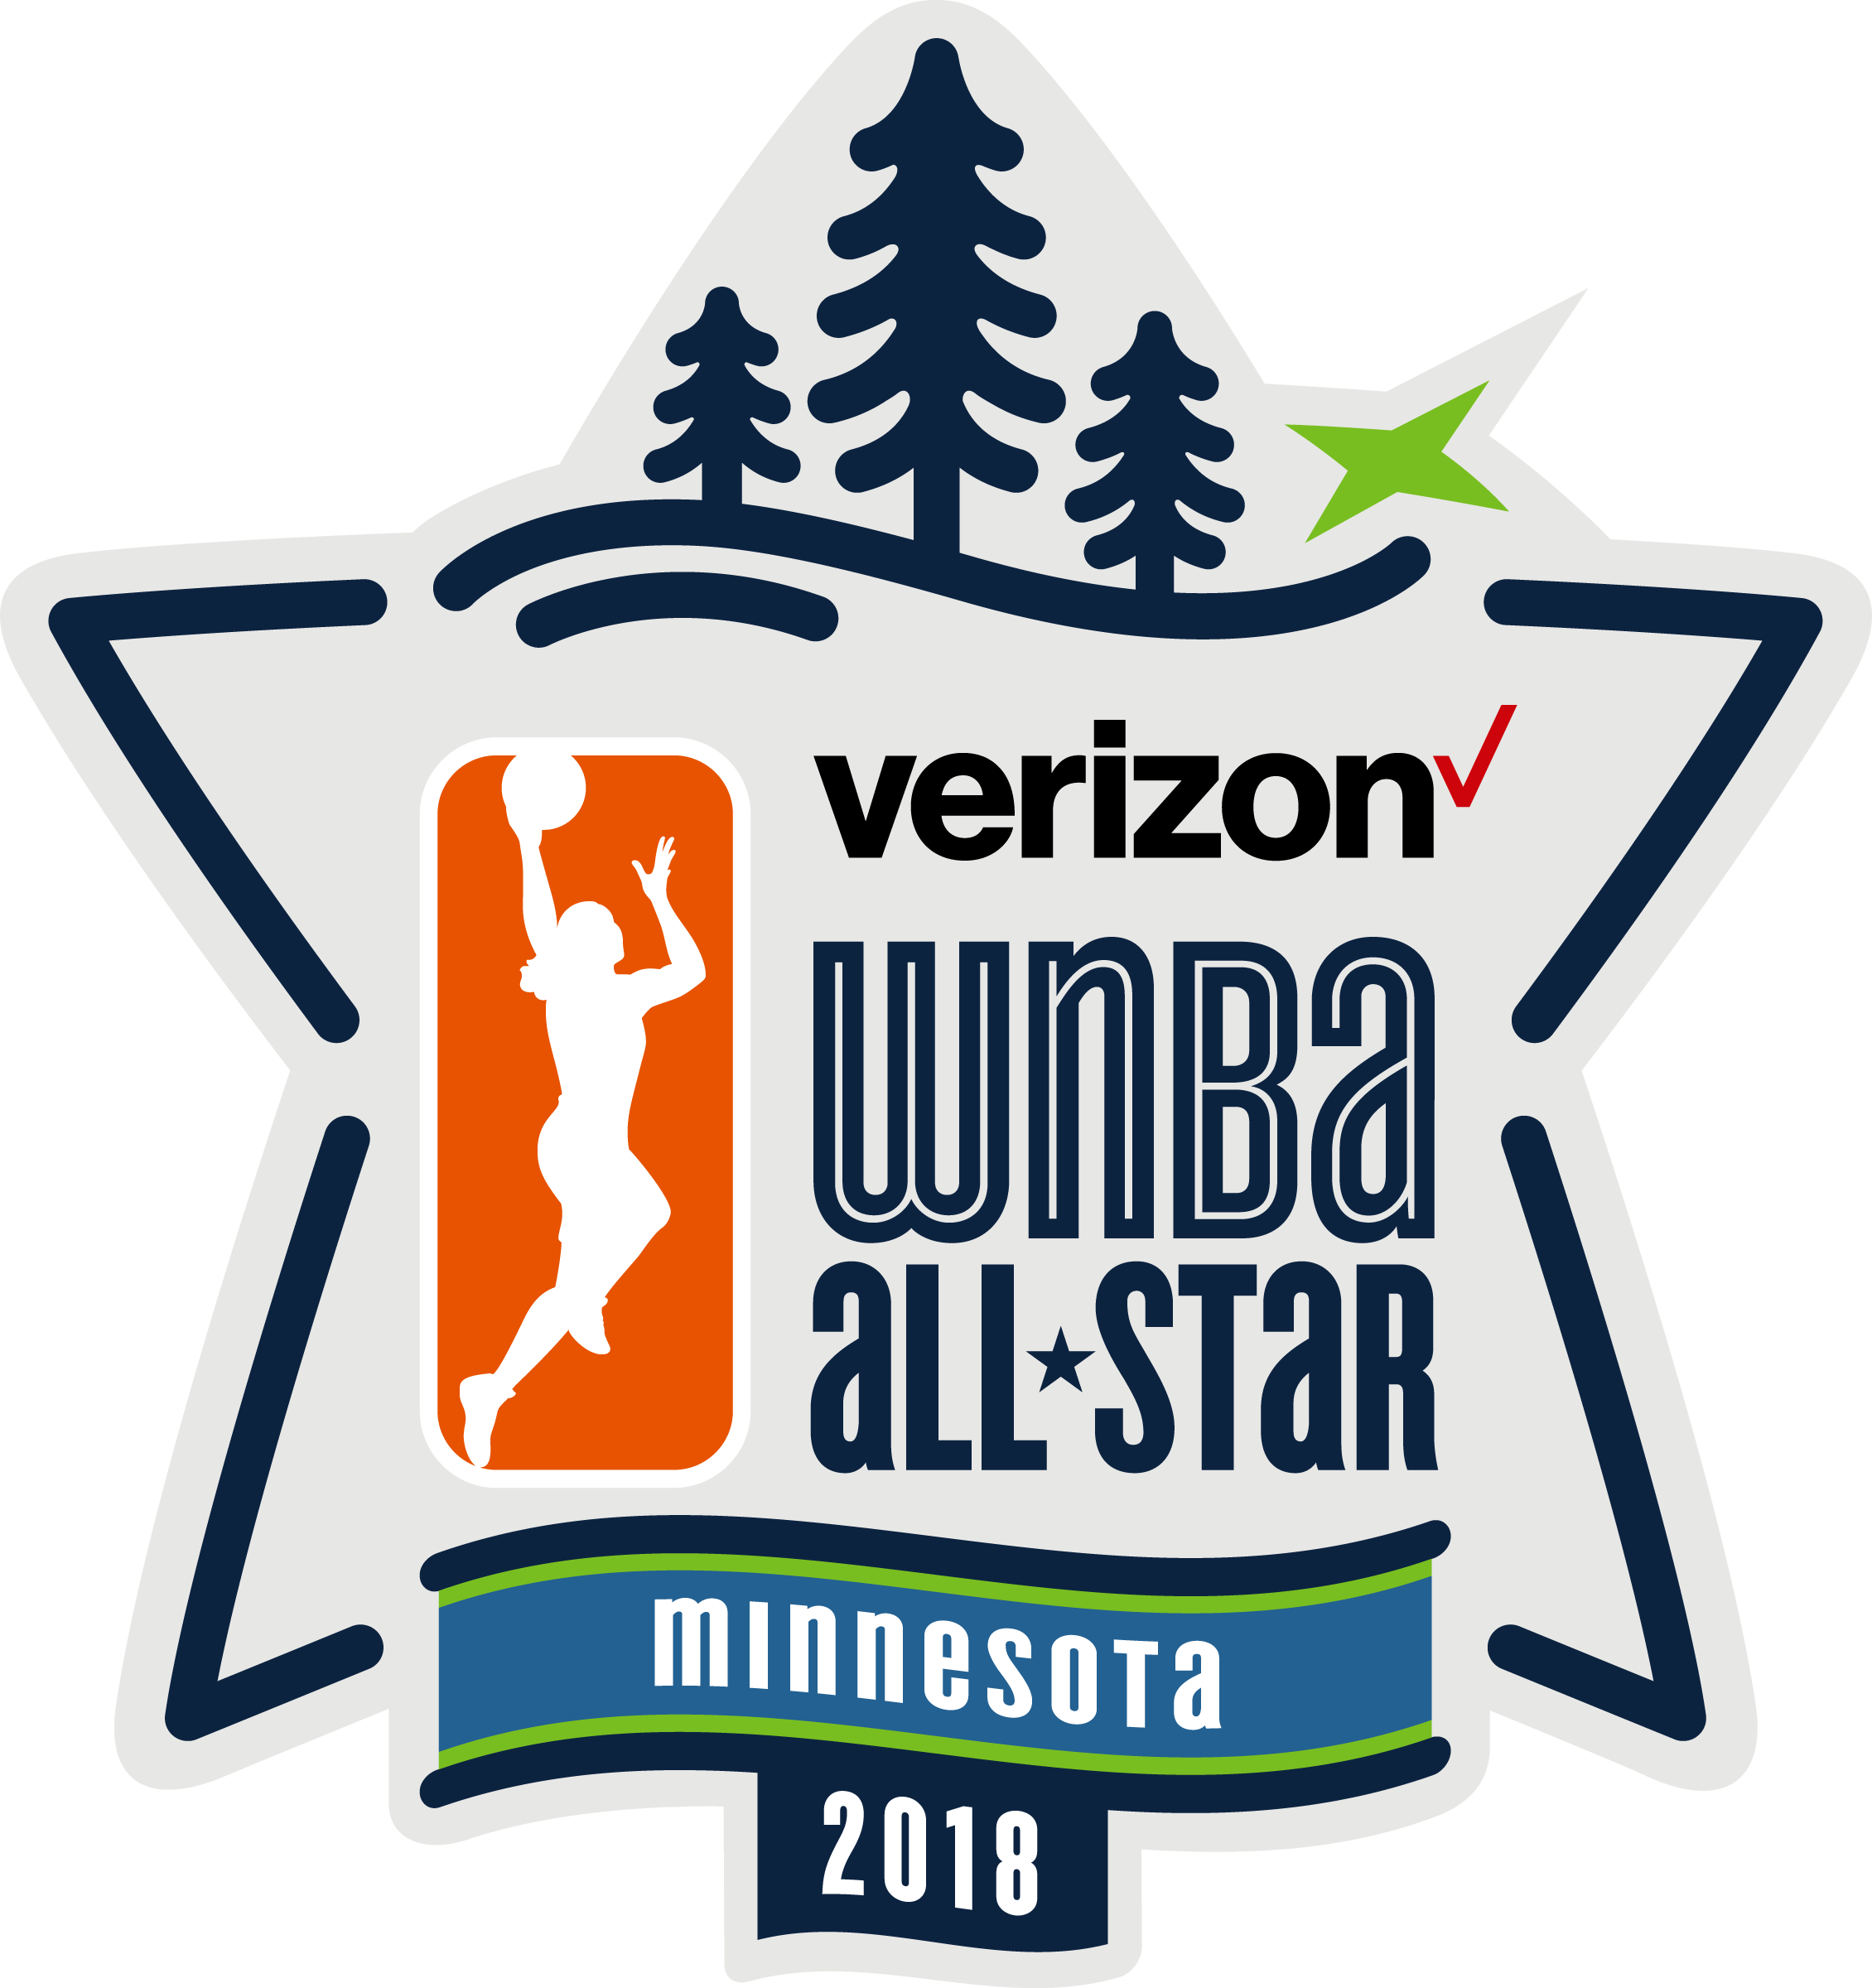 Wnba 2018 All Star Logo (2260x2400)